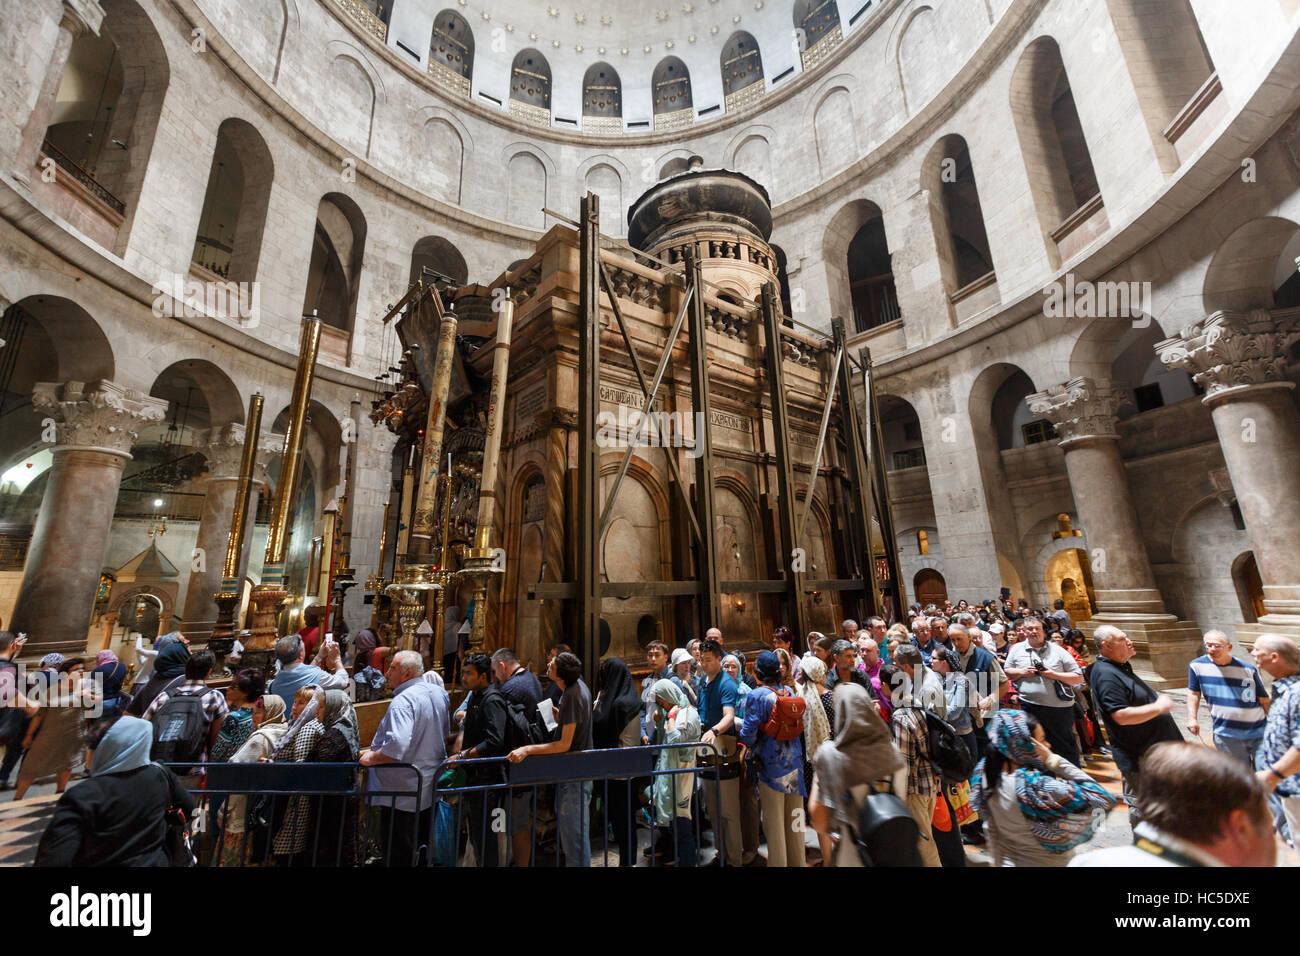 Jerusalén, Israel - Abril 06, 2016: Los peregrinos y los turistas están esperando para entrar Aedicule en la Iglesia del Santo Sepulcro, el mundo cristiano más grande Foto de stock